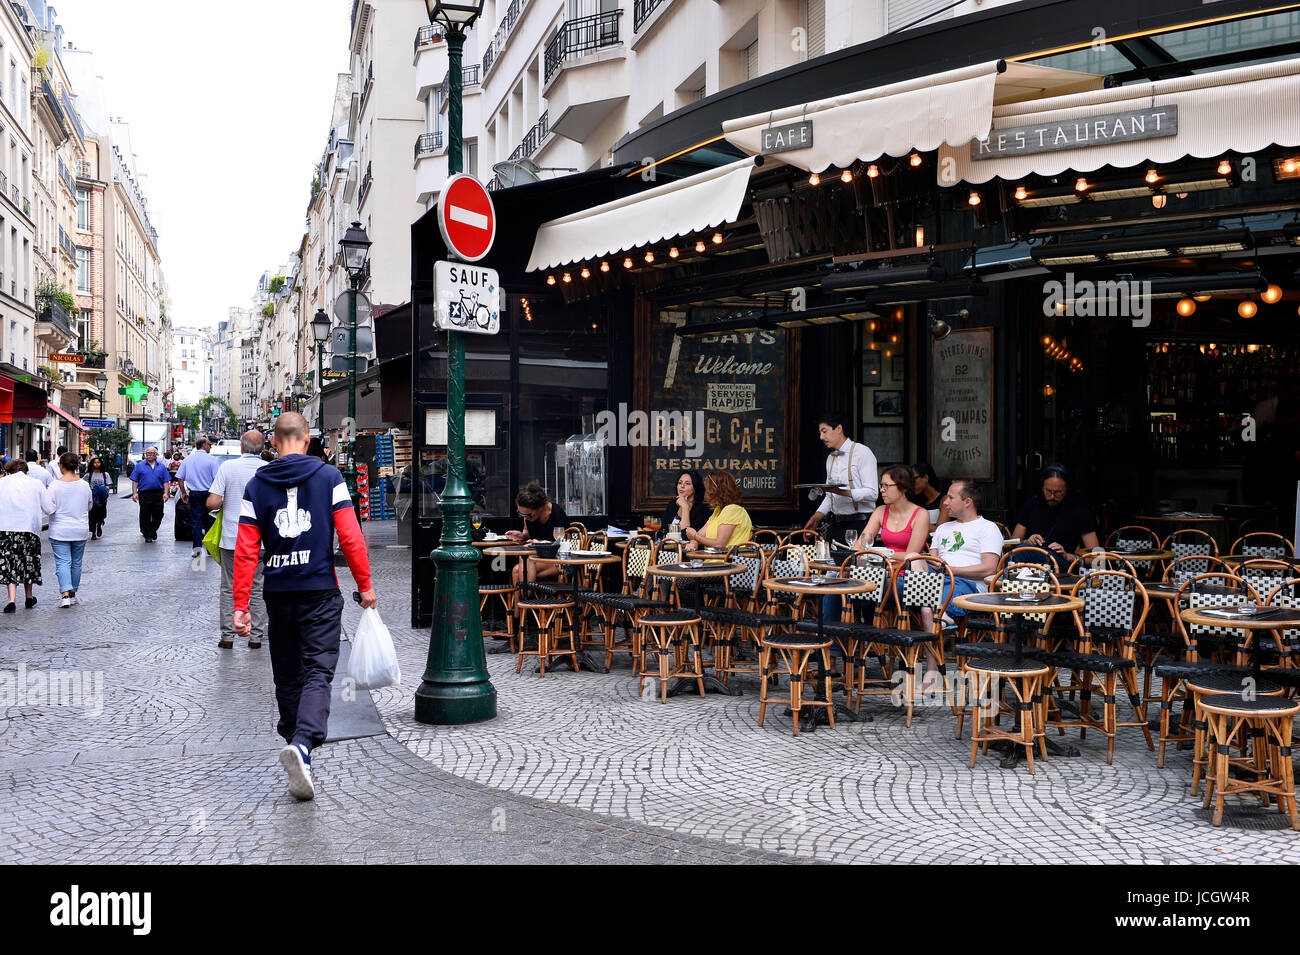 Parisain café, rue Montorgueil, Paris 2th, France Stock Photo